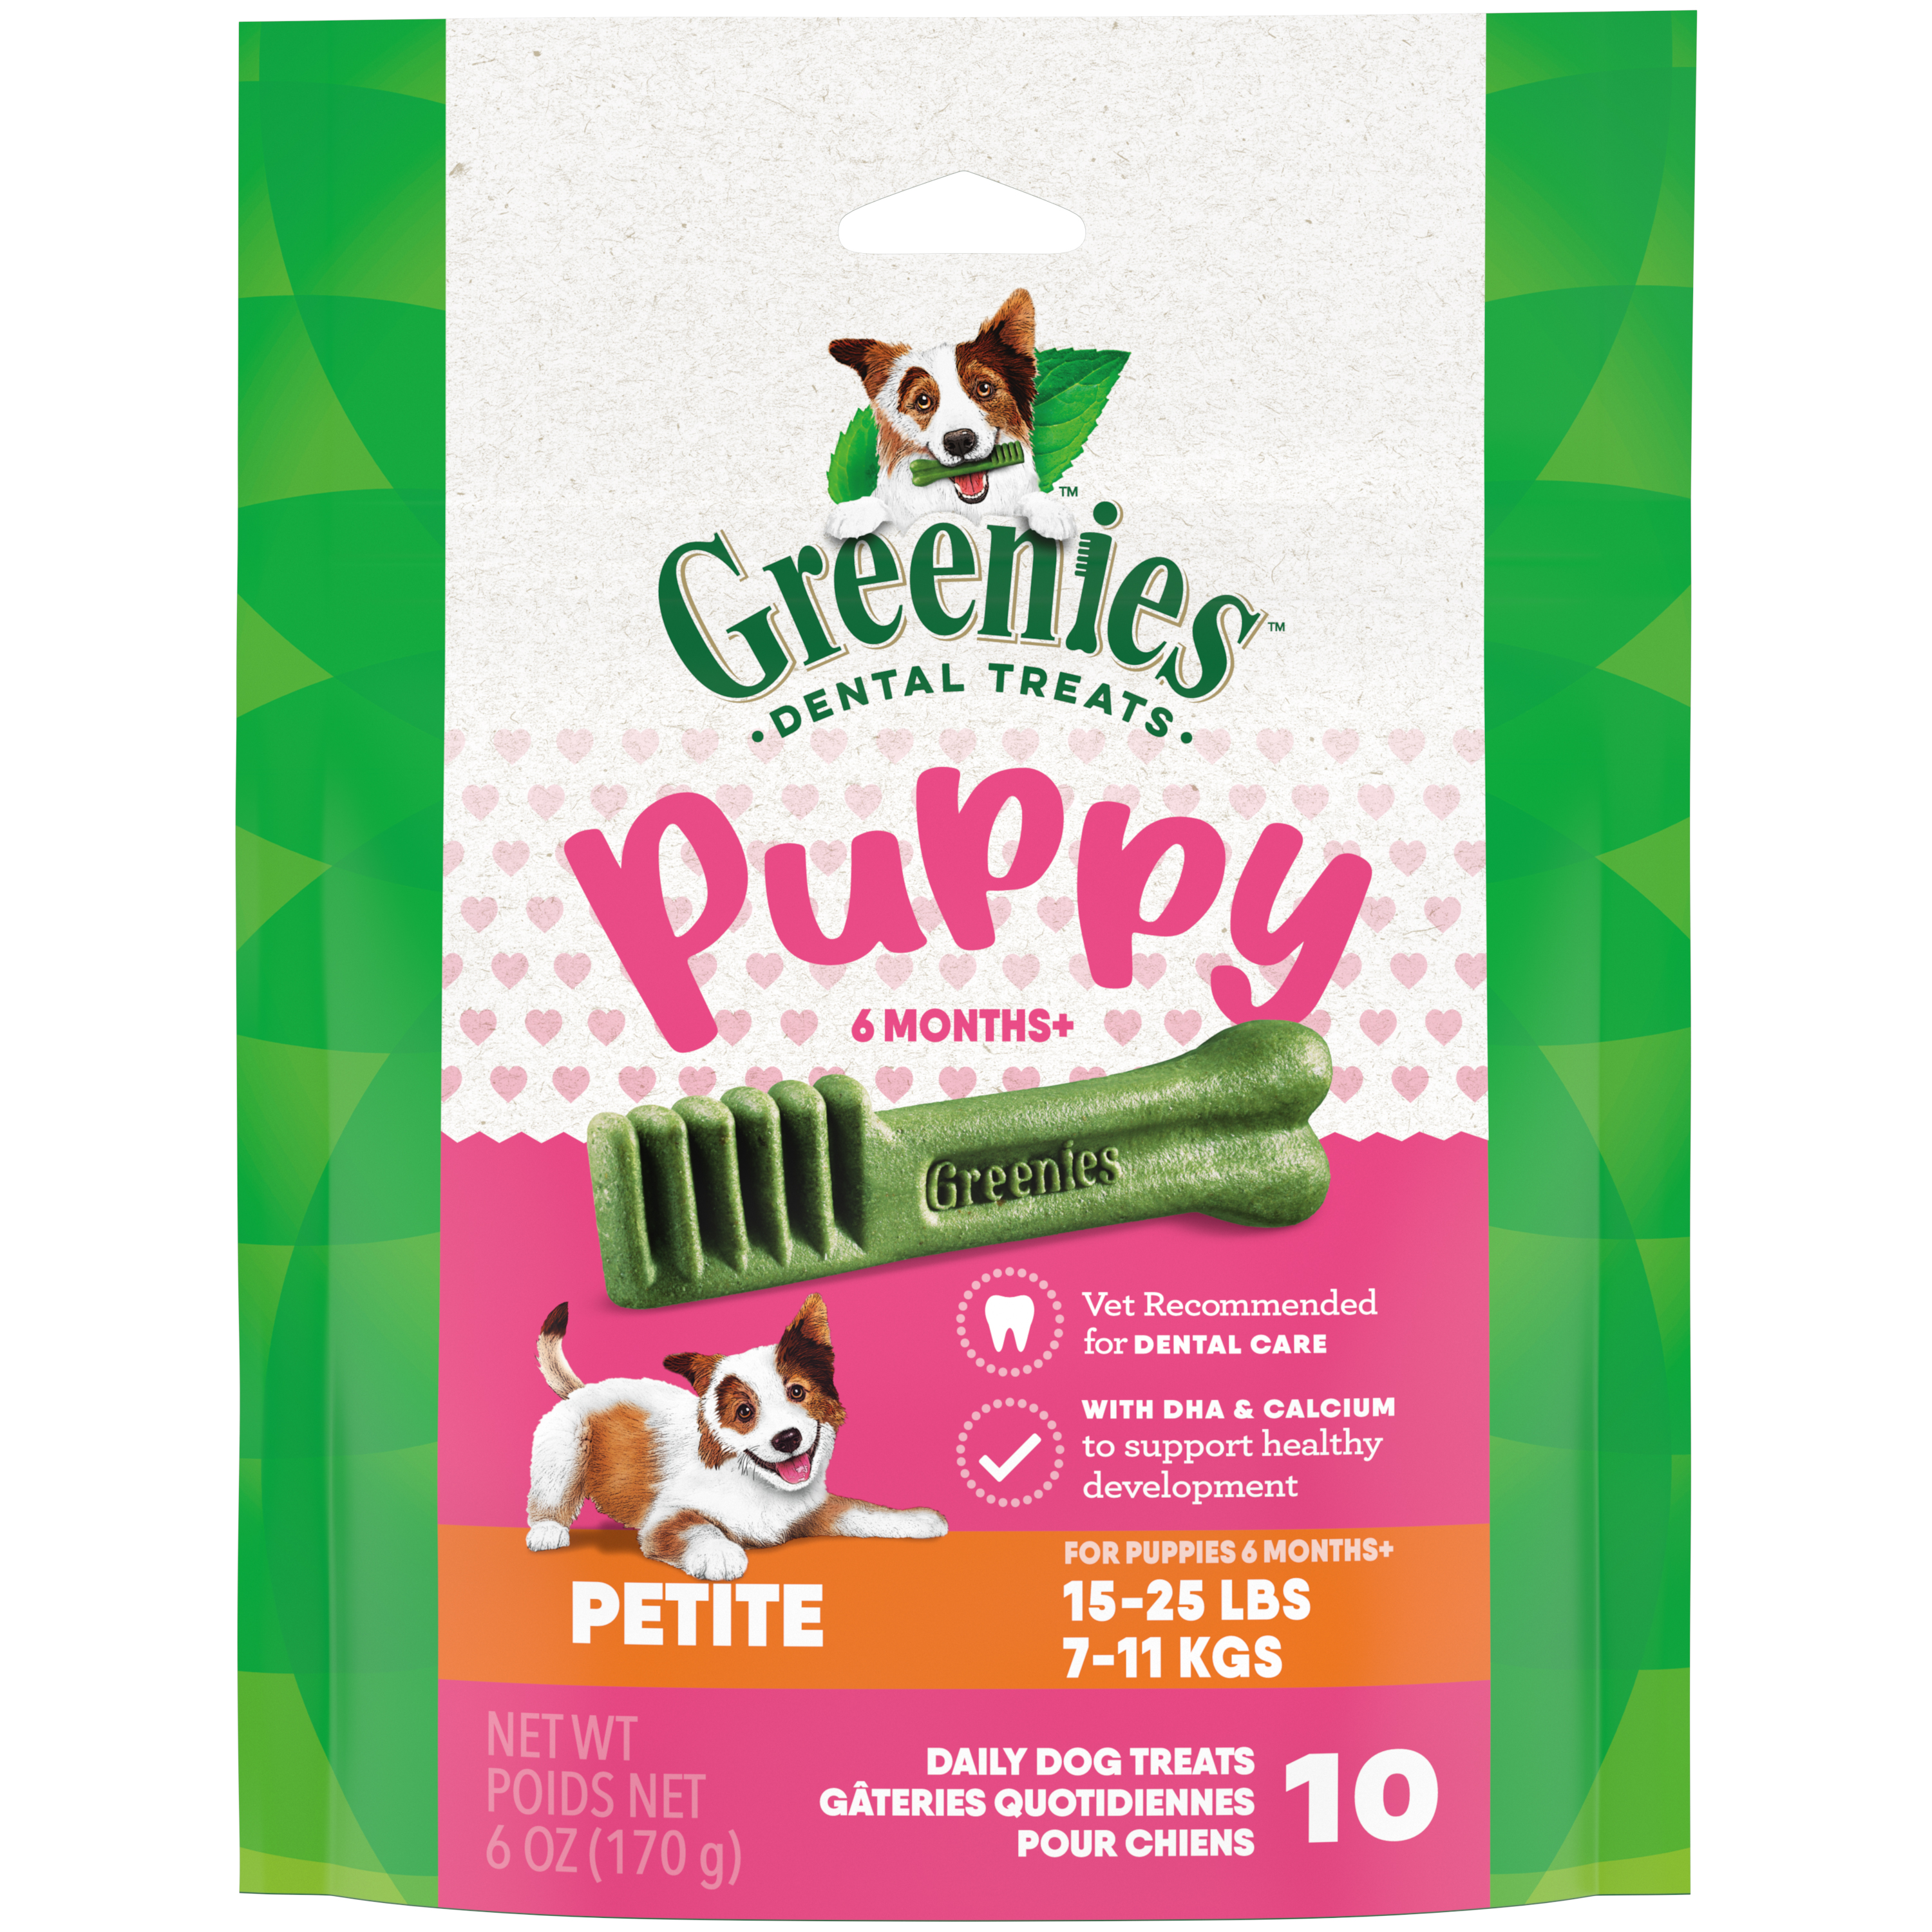 6oz Greenies PUPPY Petite Mini Treat Pack - Treats